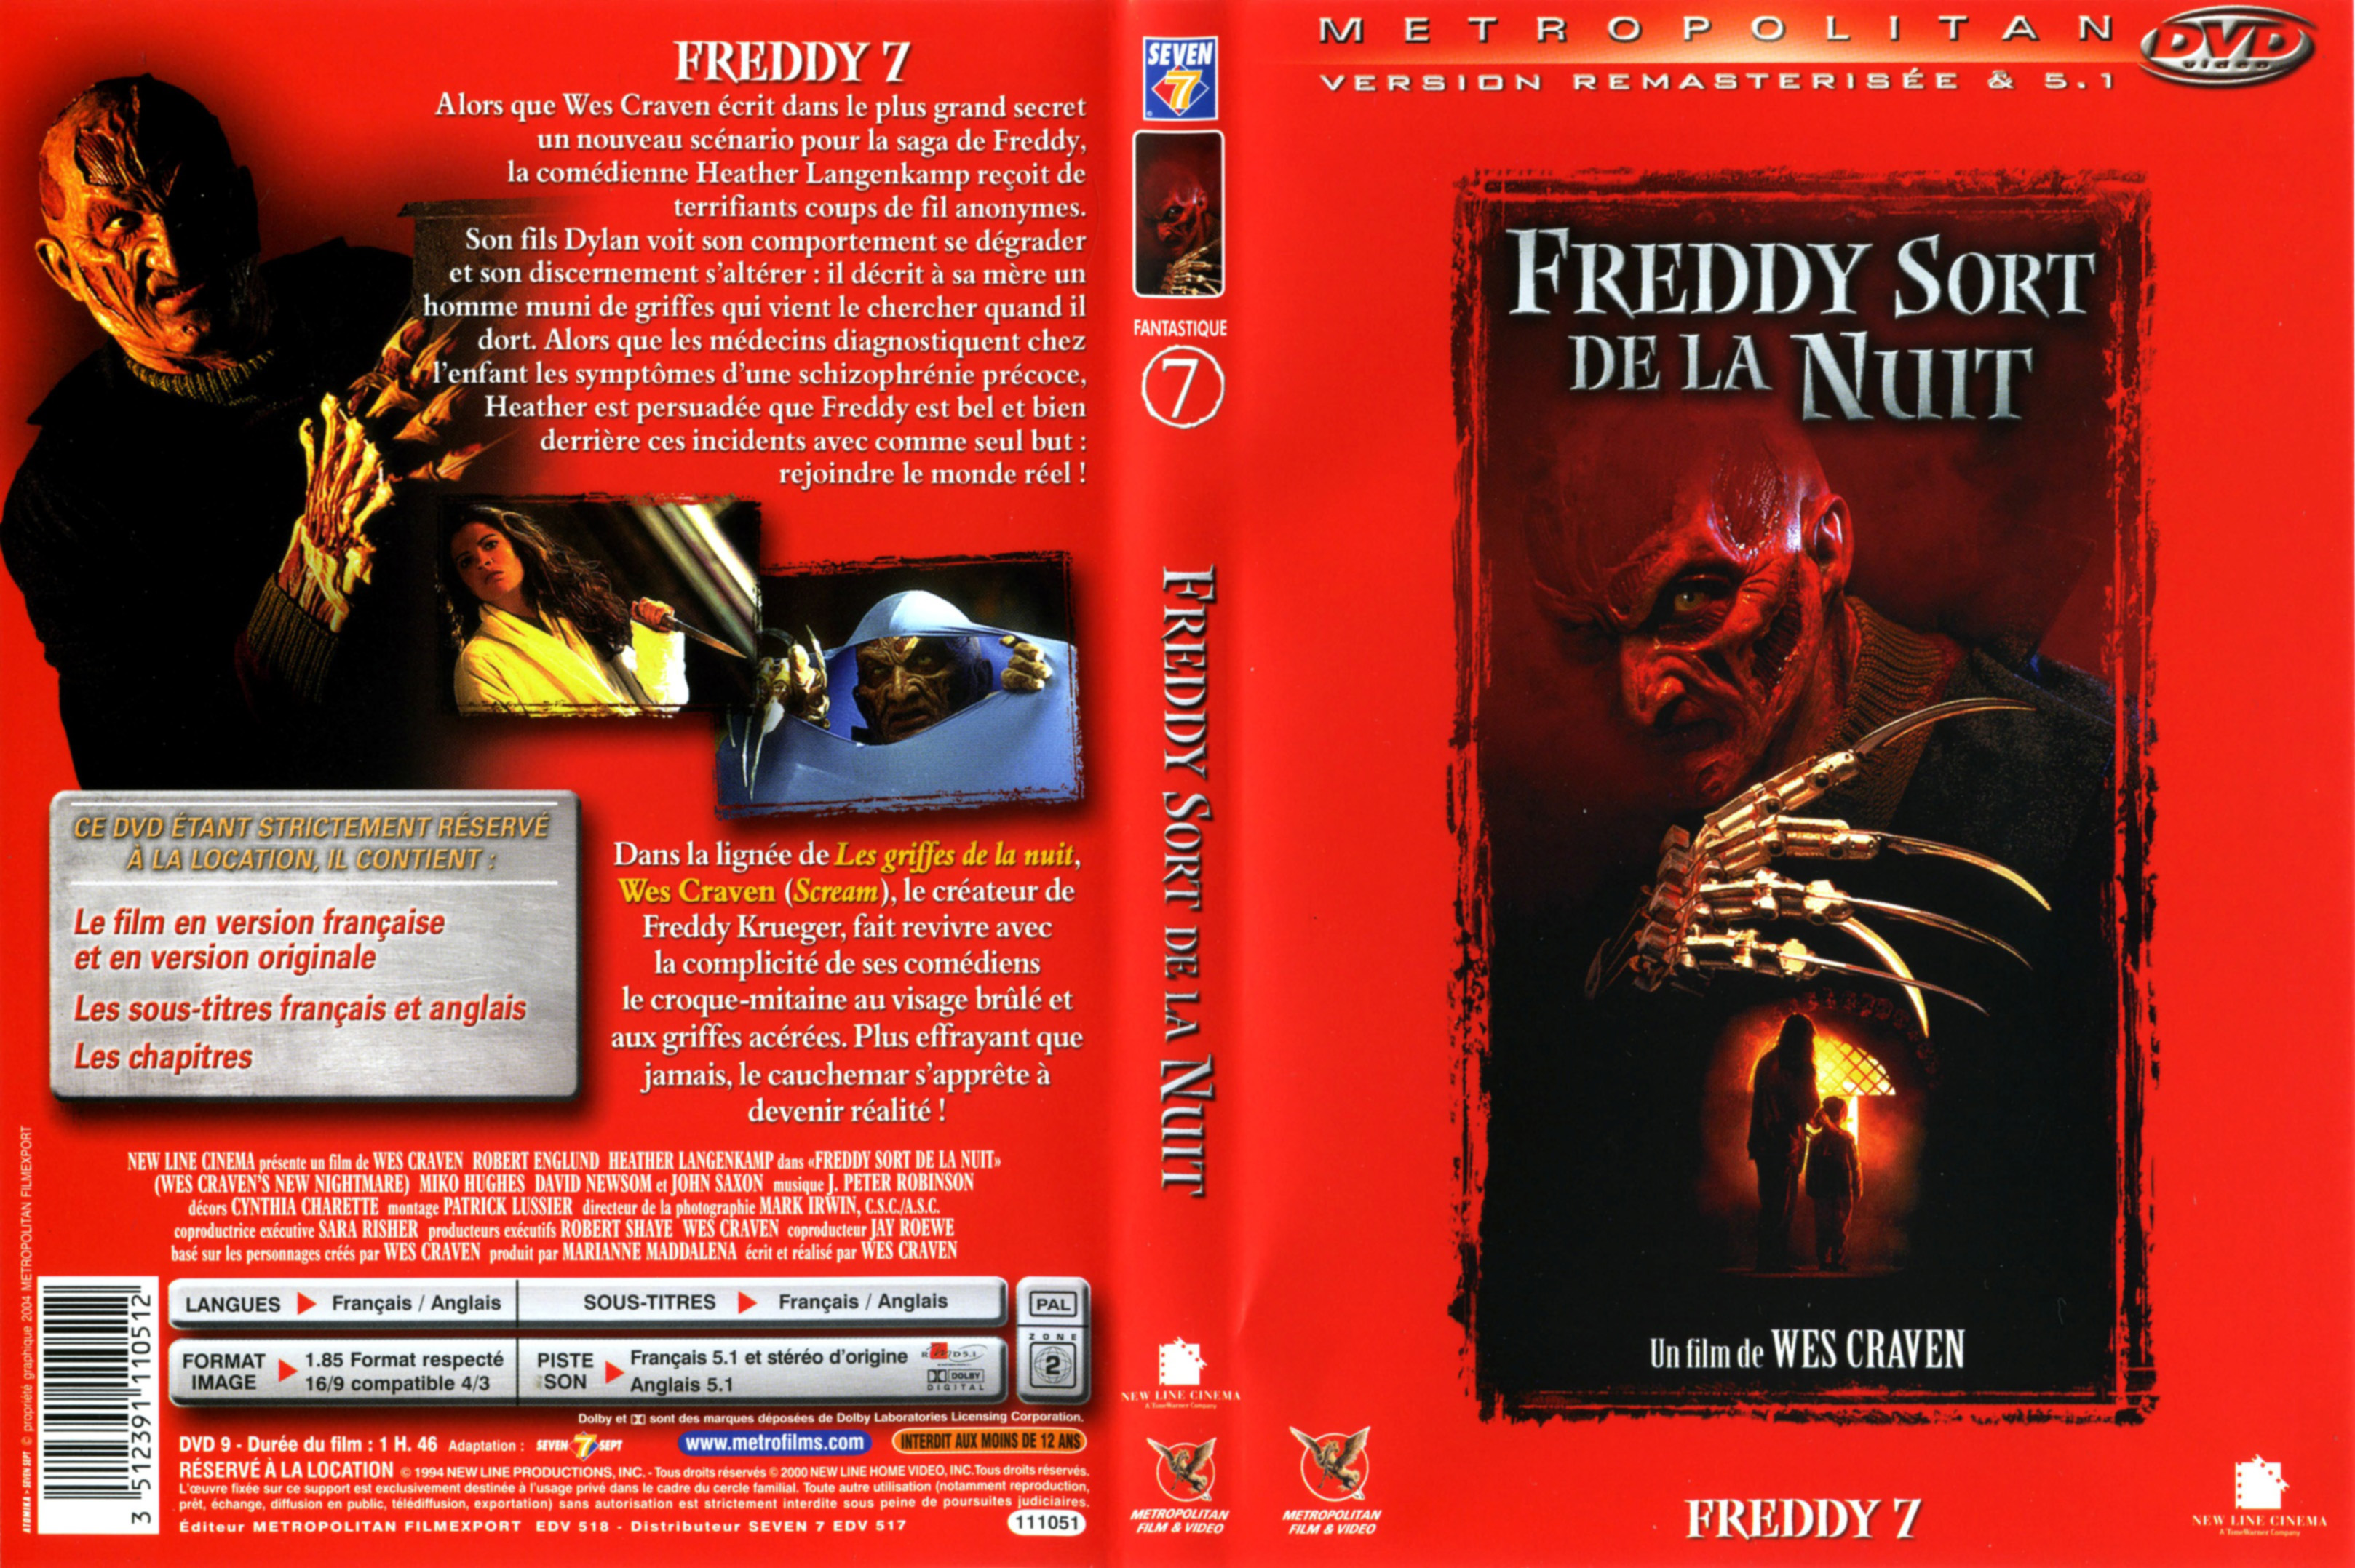 Jaquette DVD Freddy 7 Freddy sort de la nuit v2